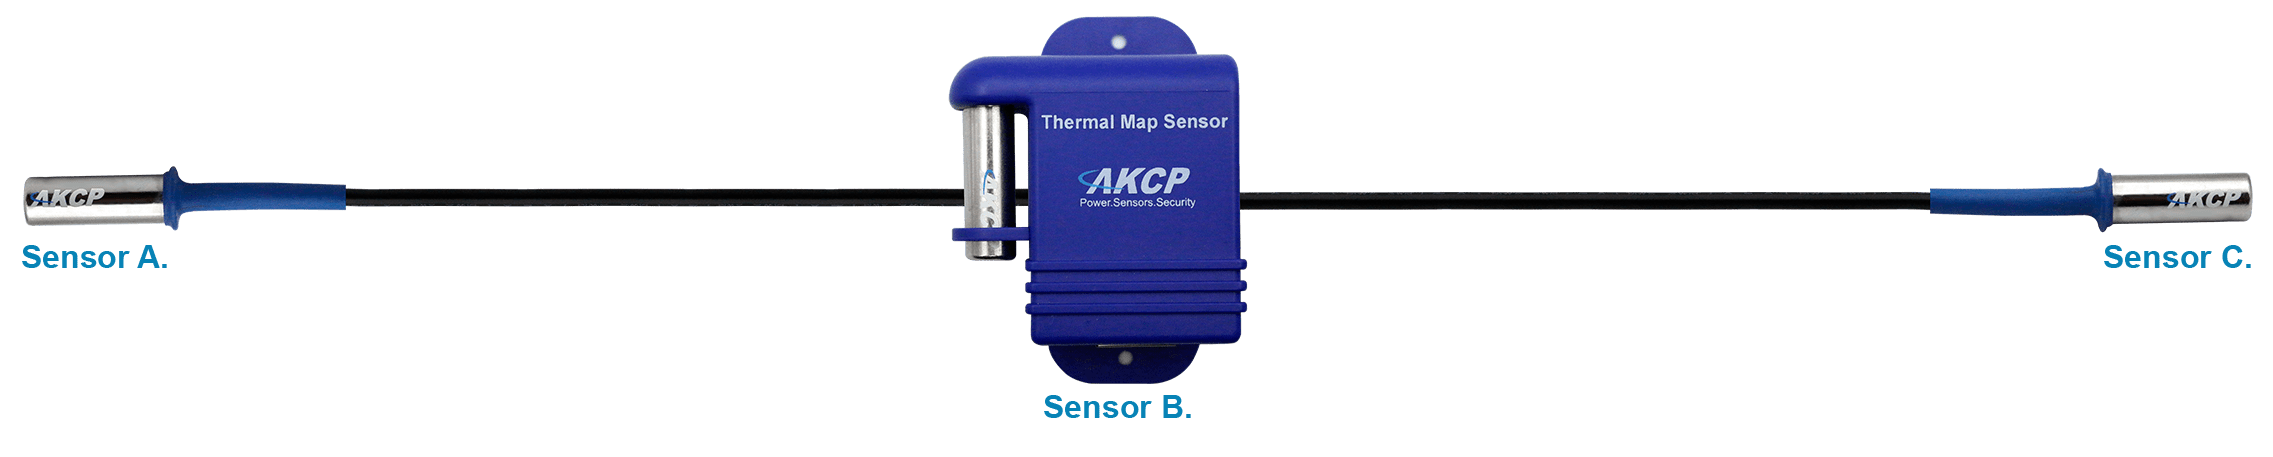 Thermal Map Sensors